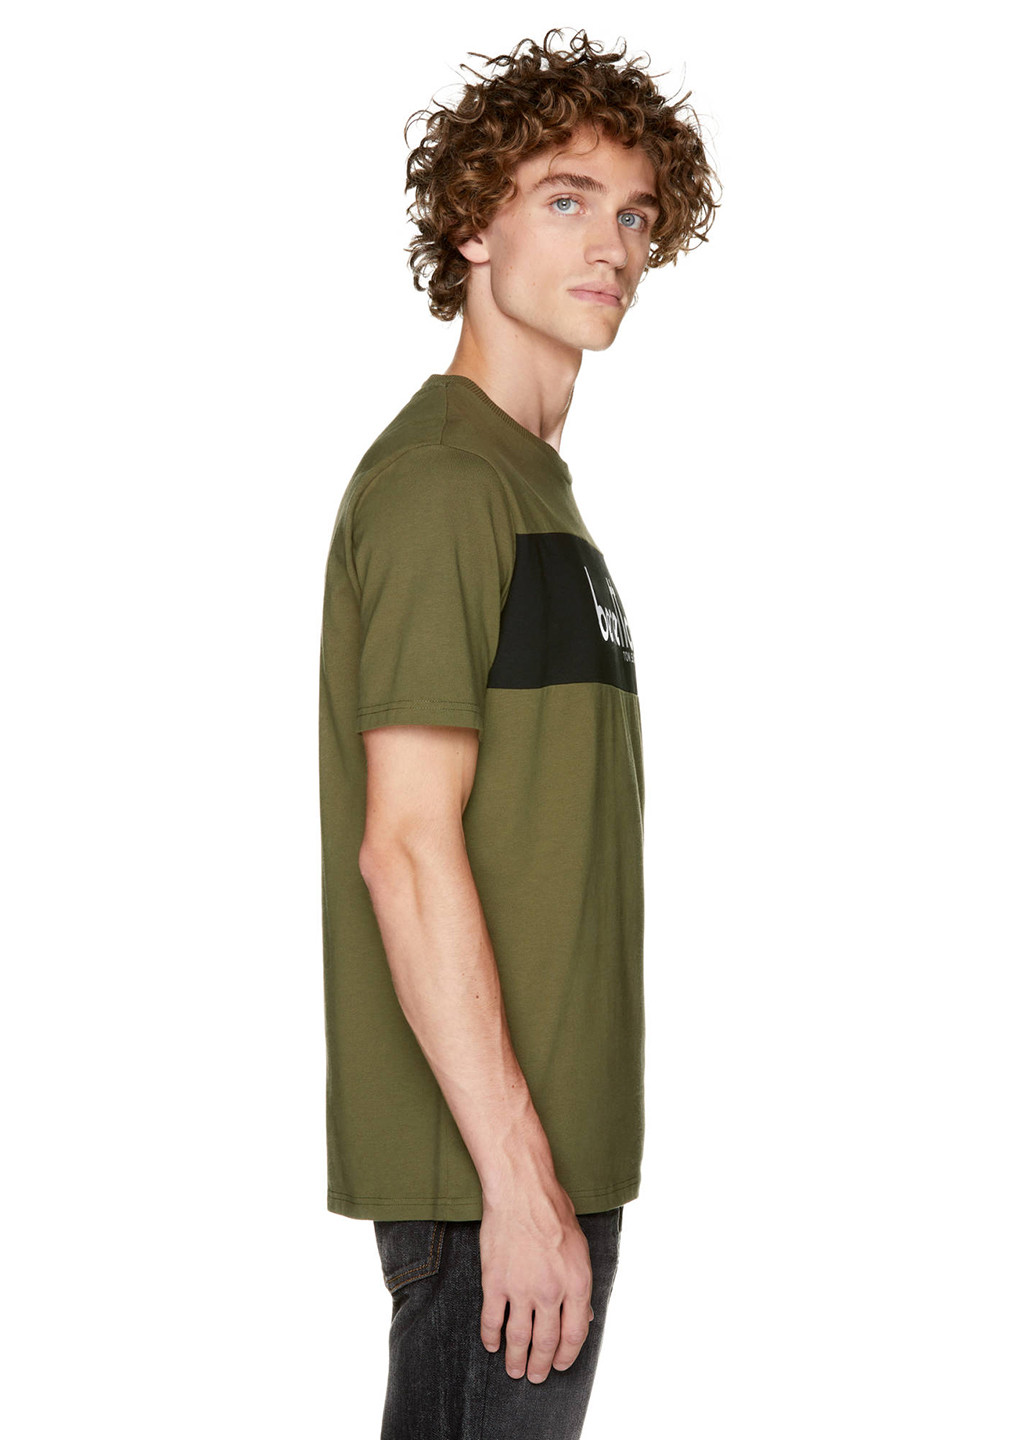 Хаки (оливковая) футболка United Colors of Benetton